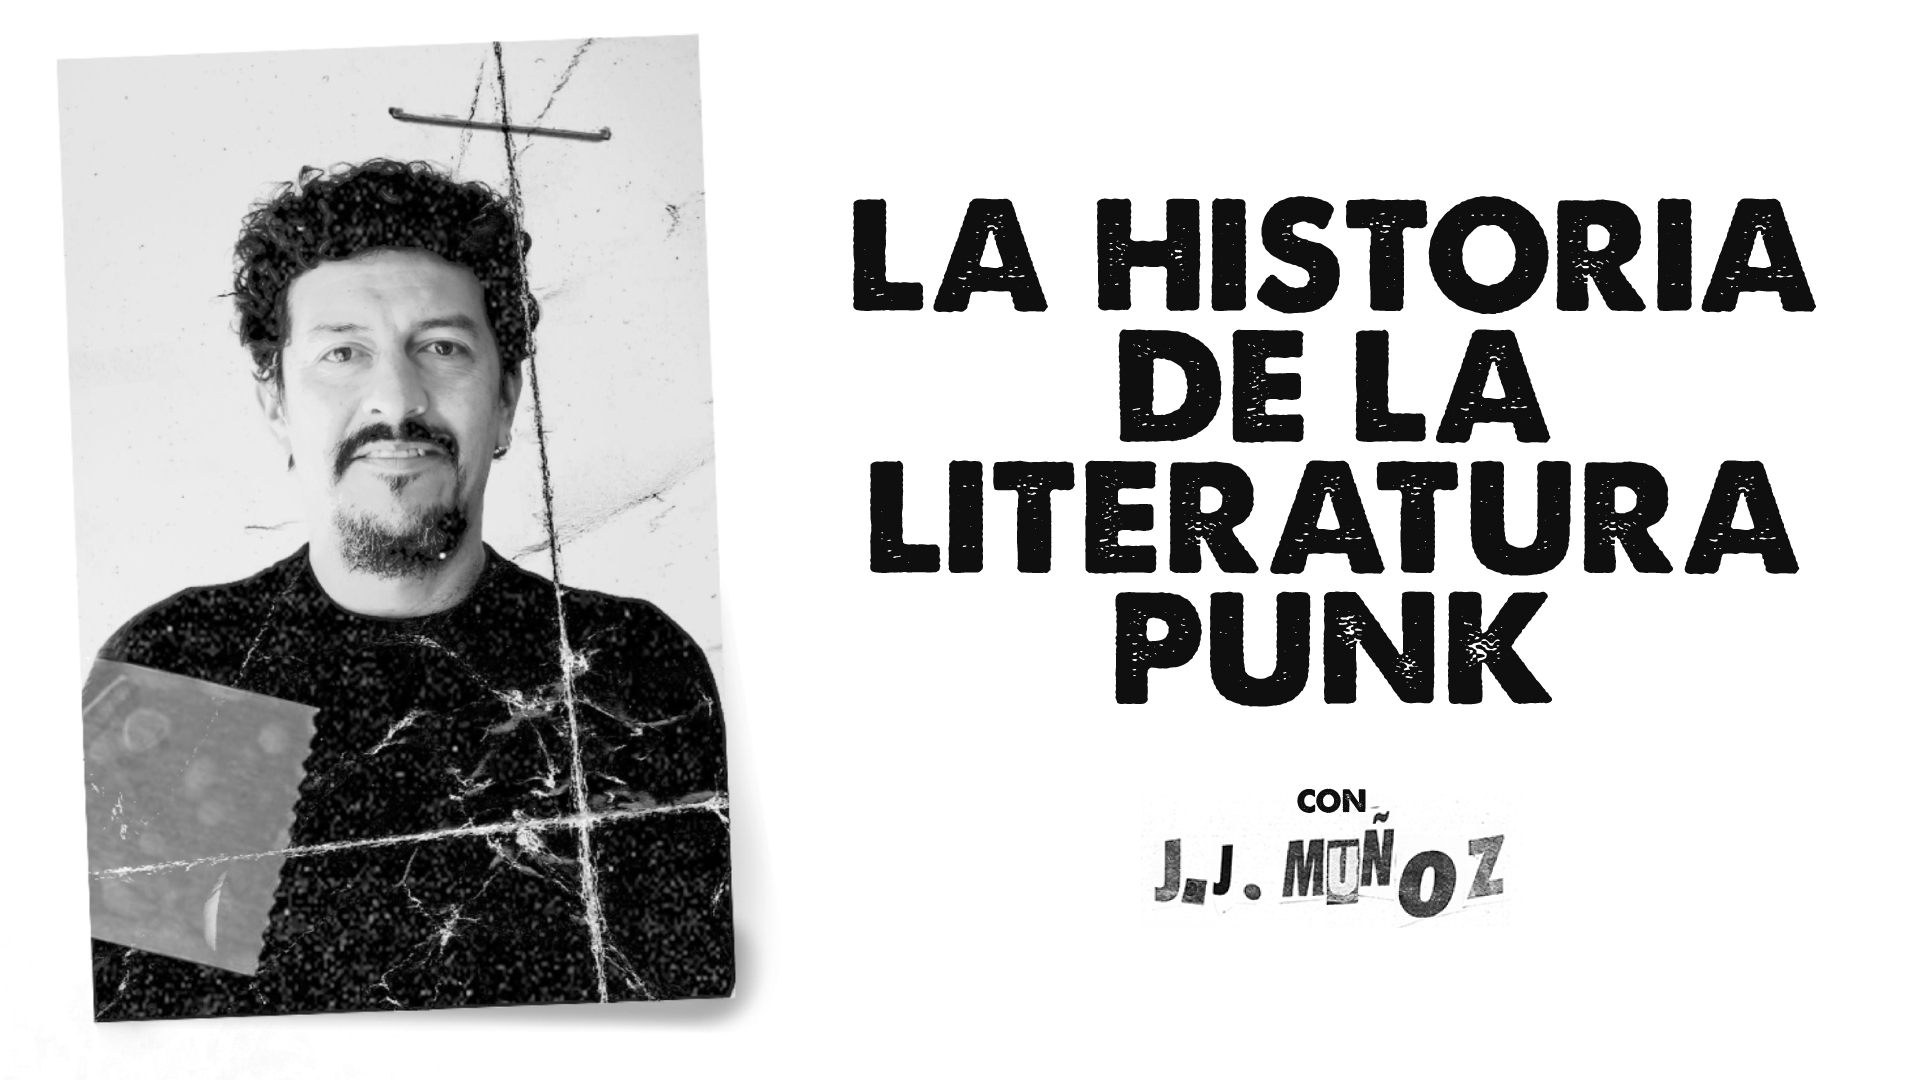 La historia de la literatura Punk con J.J. Muñoz